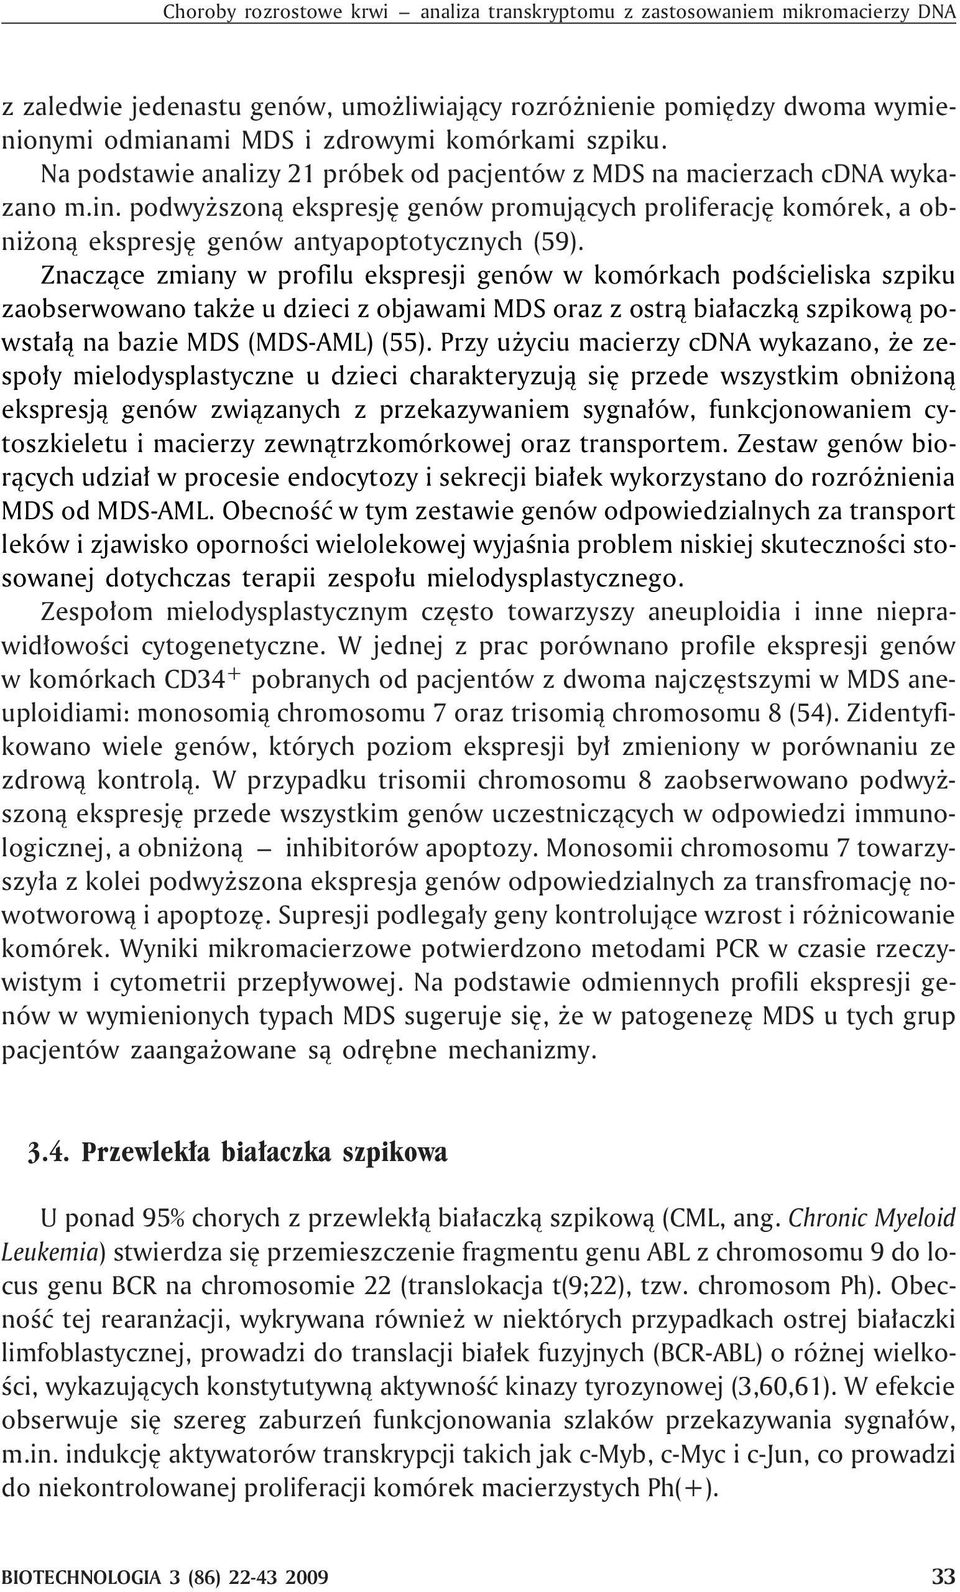 podwy szon¹ ekspresjê genów promuj¹cych proliferacjê komórek, a obni on¹ ekspresjê genów antyapoptotycznych (59).